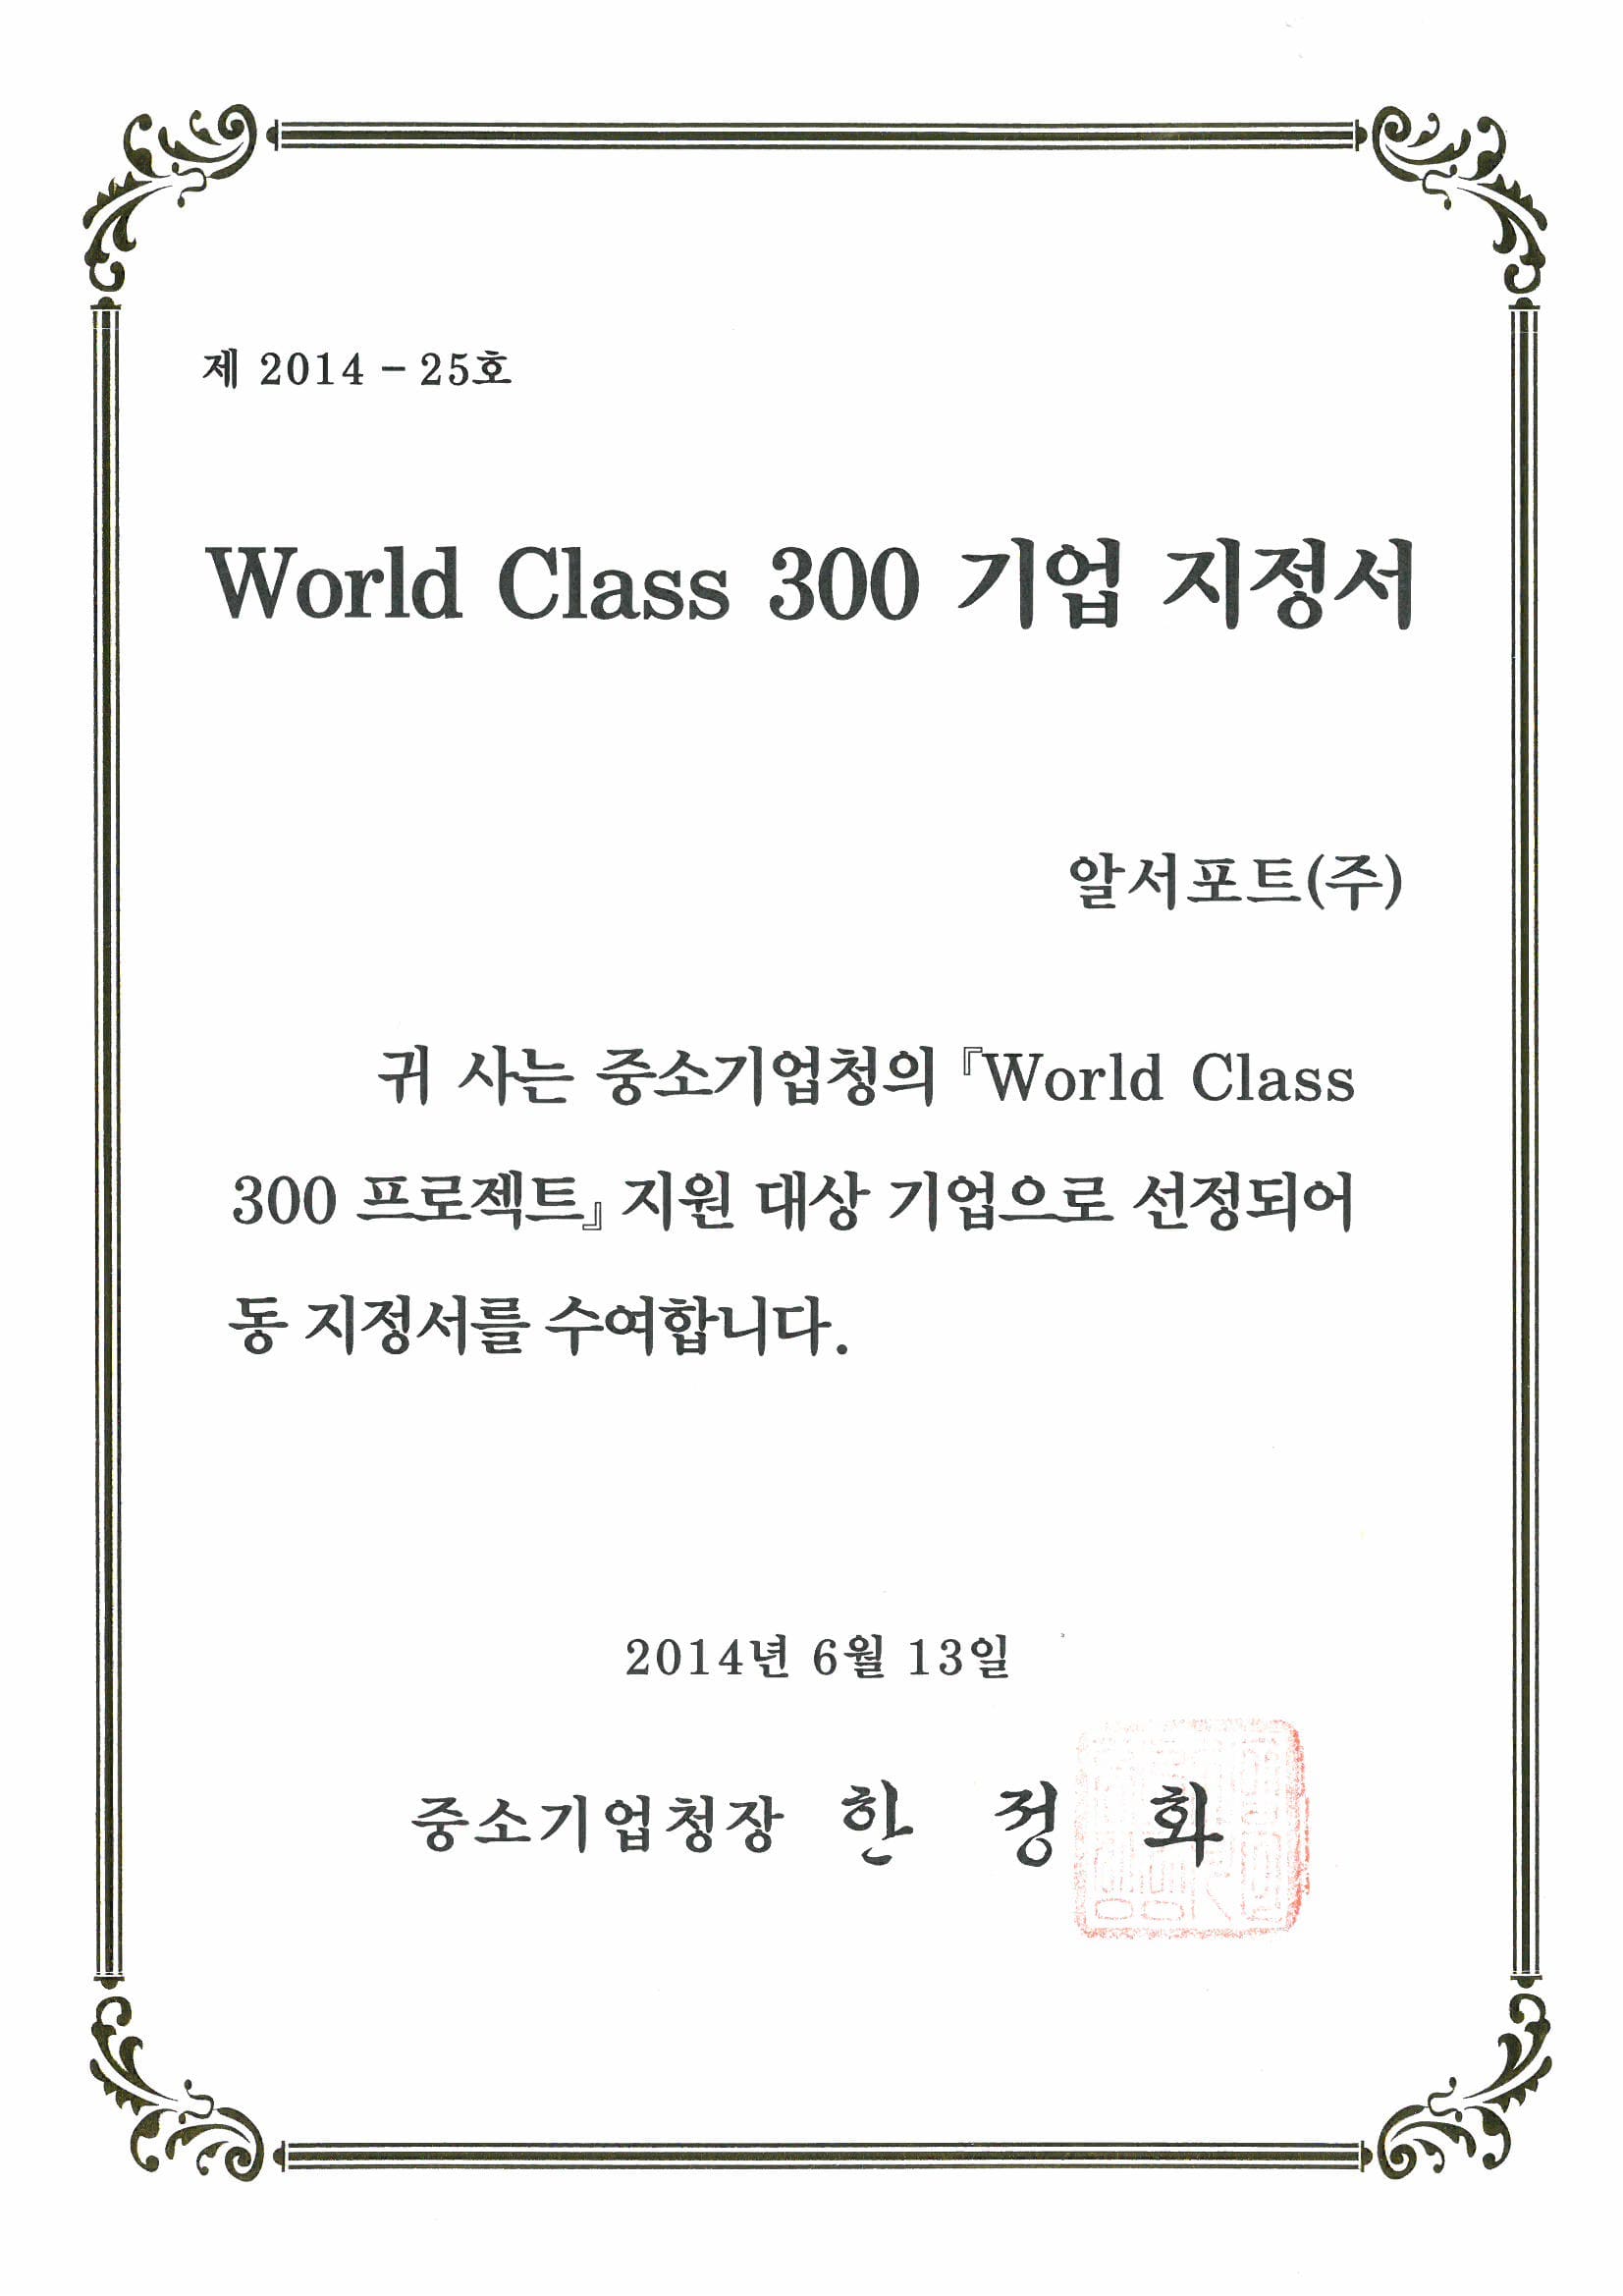 World Class 300 기업 지정서